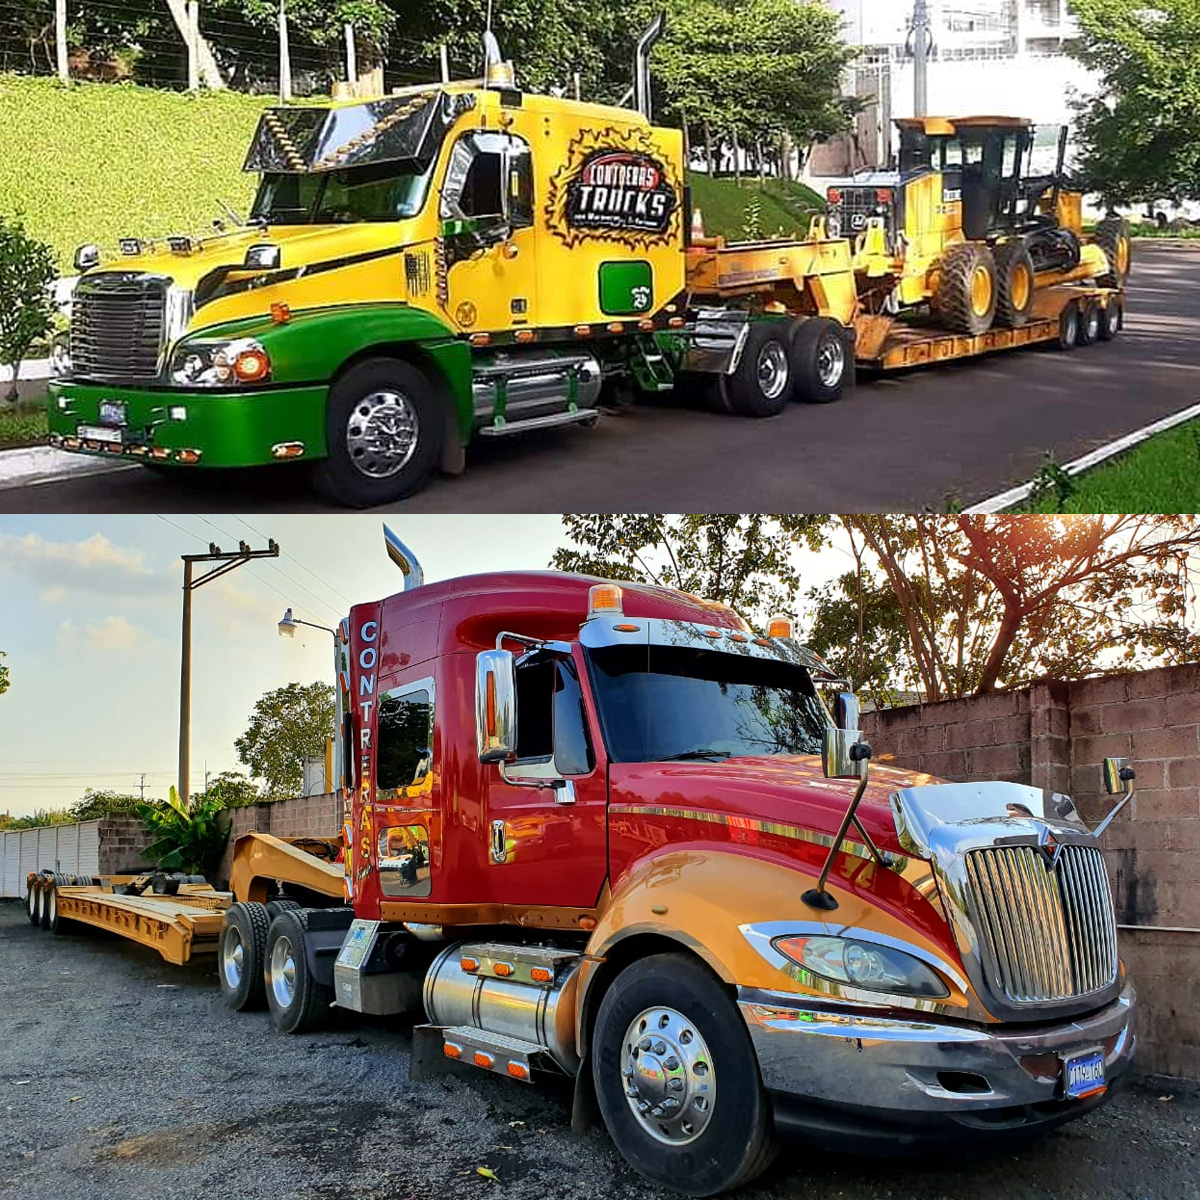 Alquiler de camiones y maquinaria - Contreras Trucks